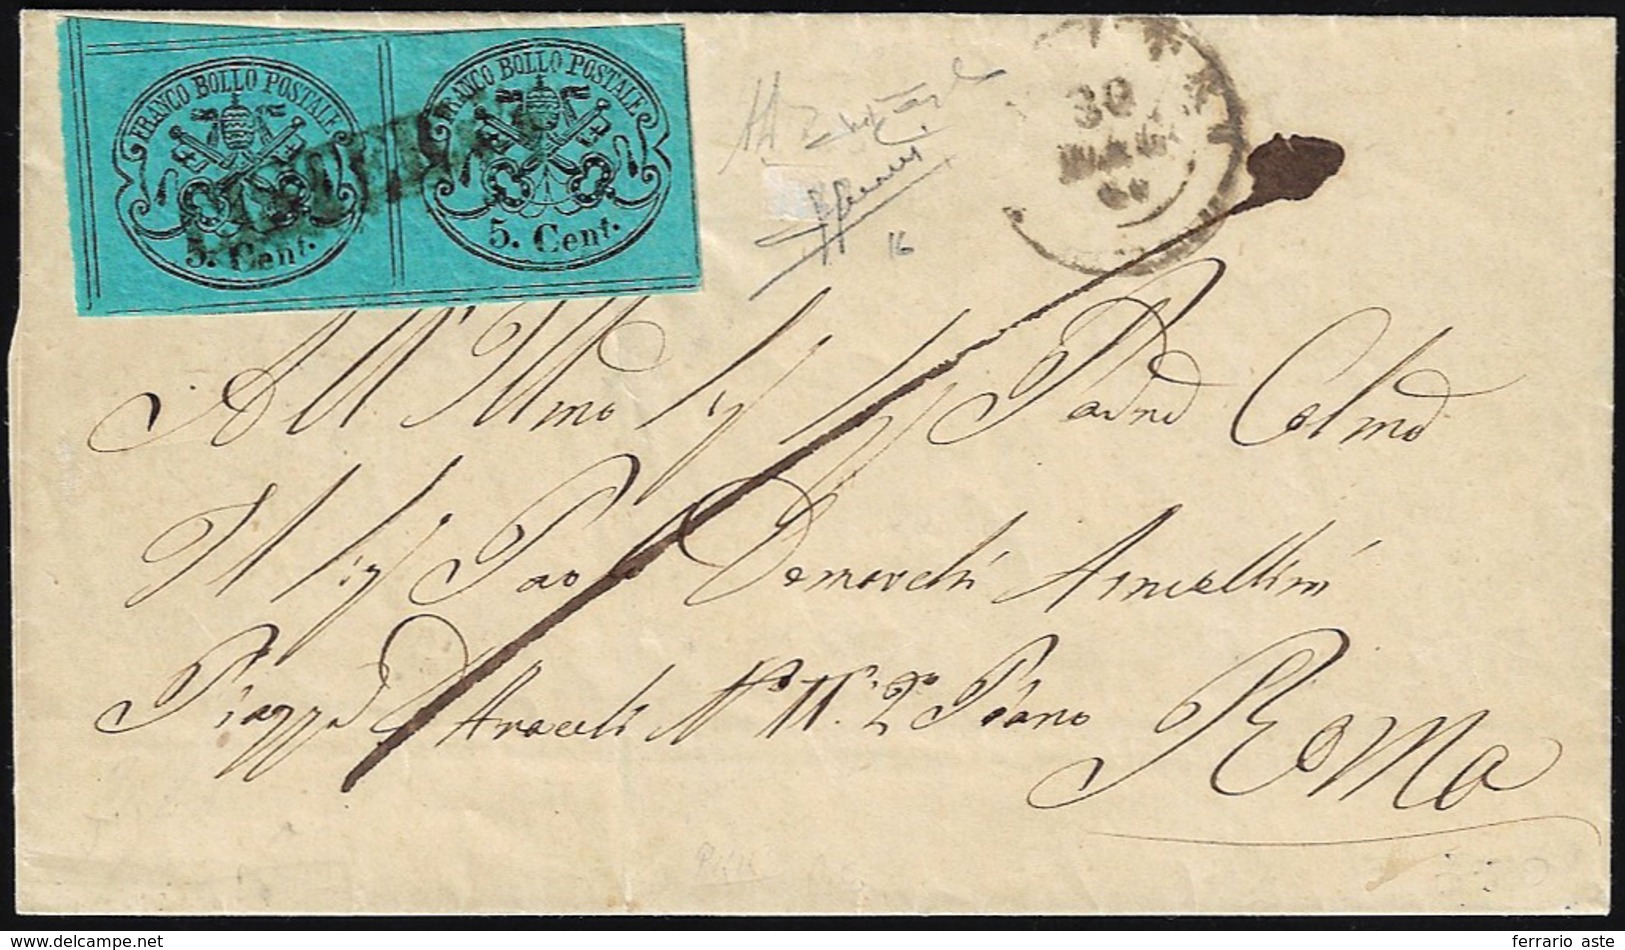 CISTERNA, Punti 13 - 5 Cent. (16), Coppia, Su Sovracoperta Di Lettera Del 30/5/1867, Datario Di Vell... - Stato Pontificio